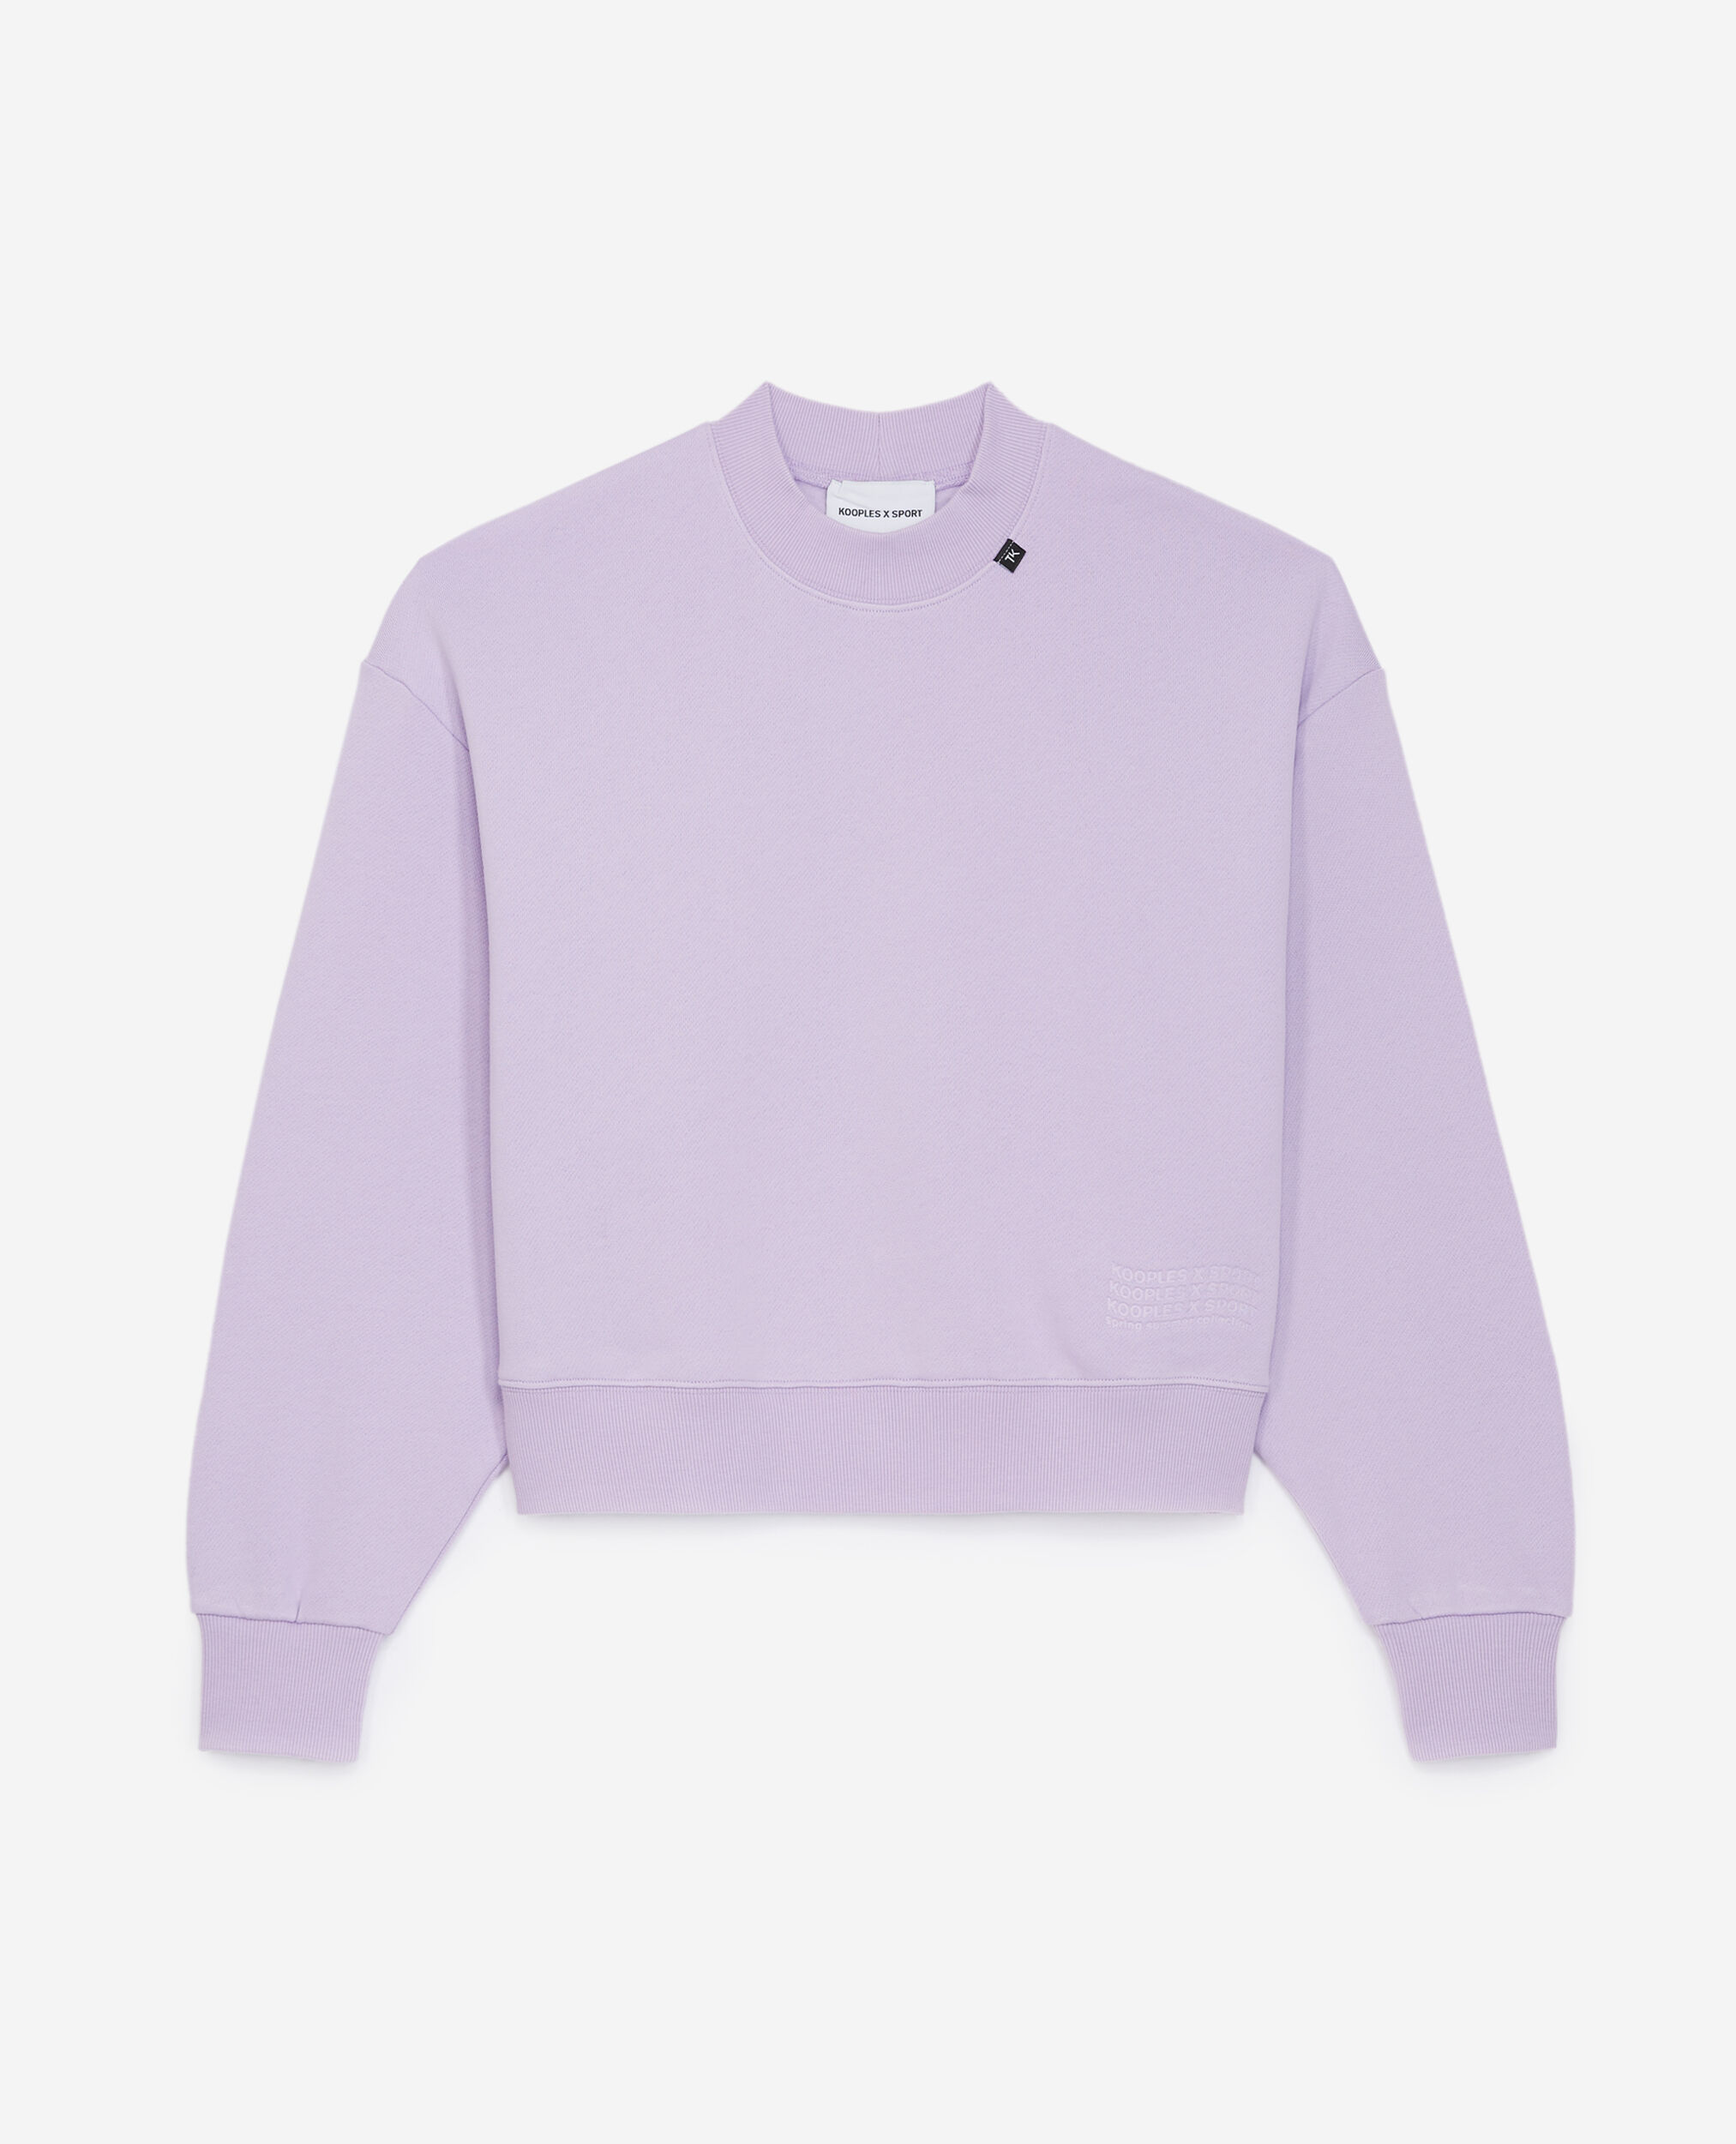 Sweatshirt violet à logo vague embossé, LIGHT PURPLE, hi-res image number null